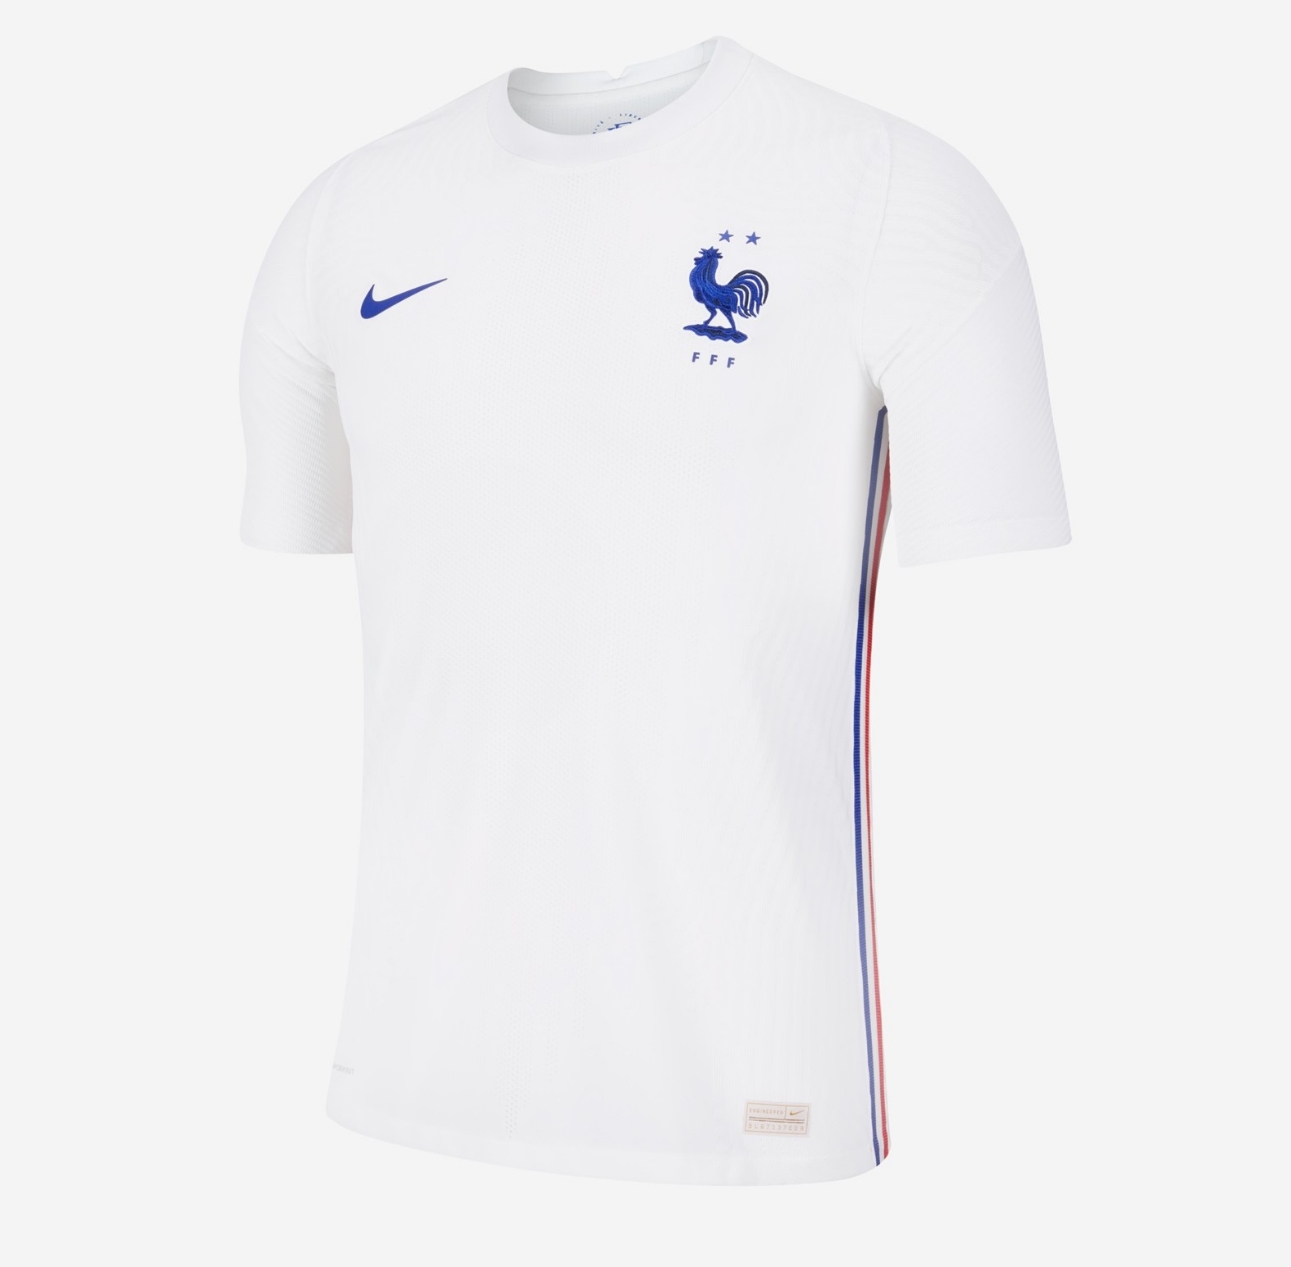 FIFA WORLD CUP เสื้อฟุตบอล ทีมชาติ ฝรั่งเศส ชุดเยือน ยูโร 2020/2021 เสื้อกีฬาผู้ชาย เกรด-A คุณภาพรับประกัน